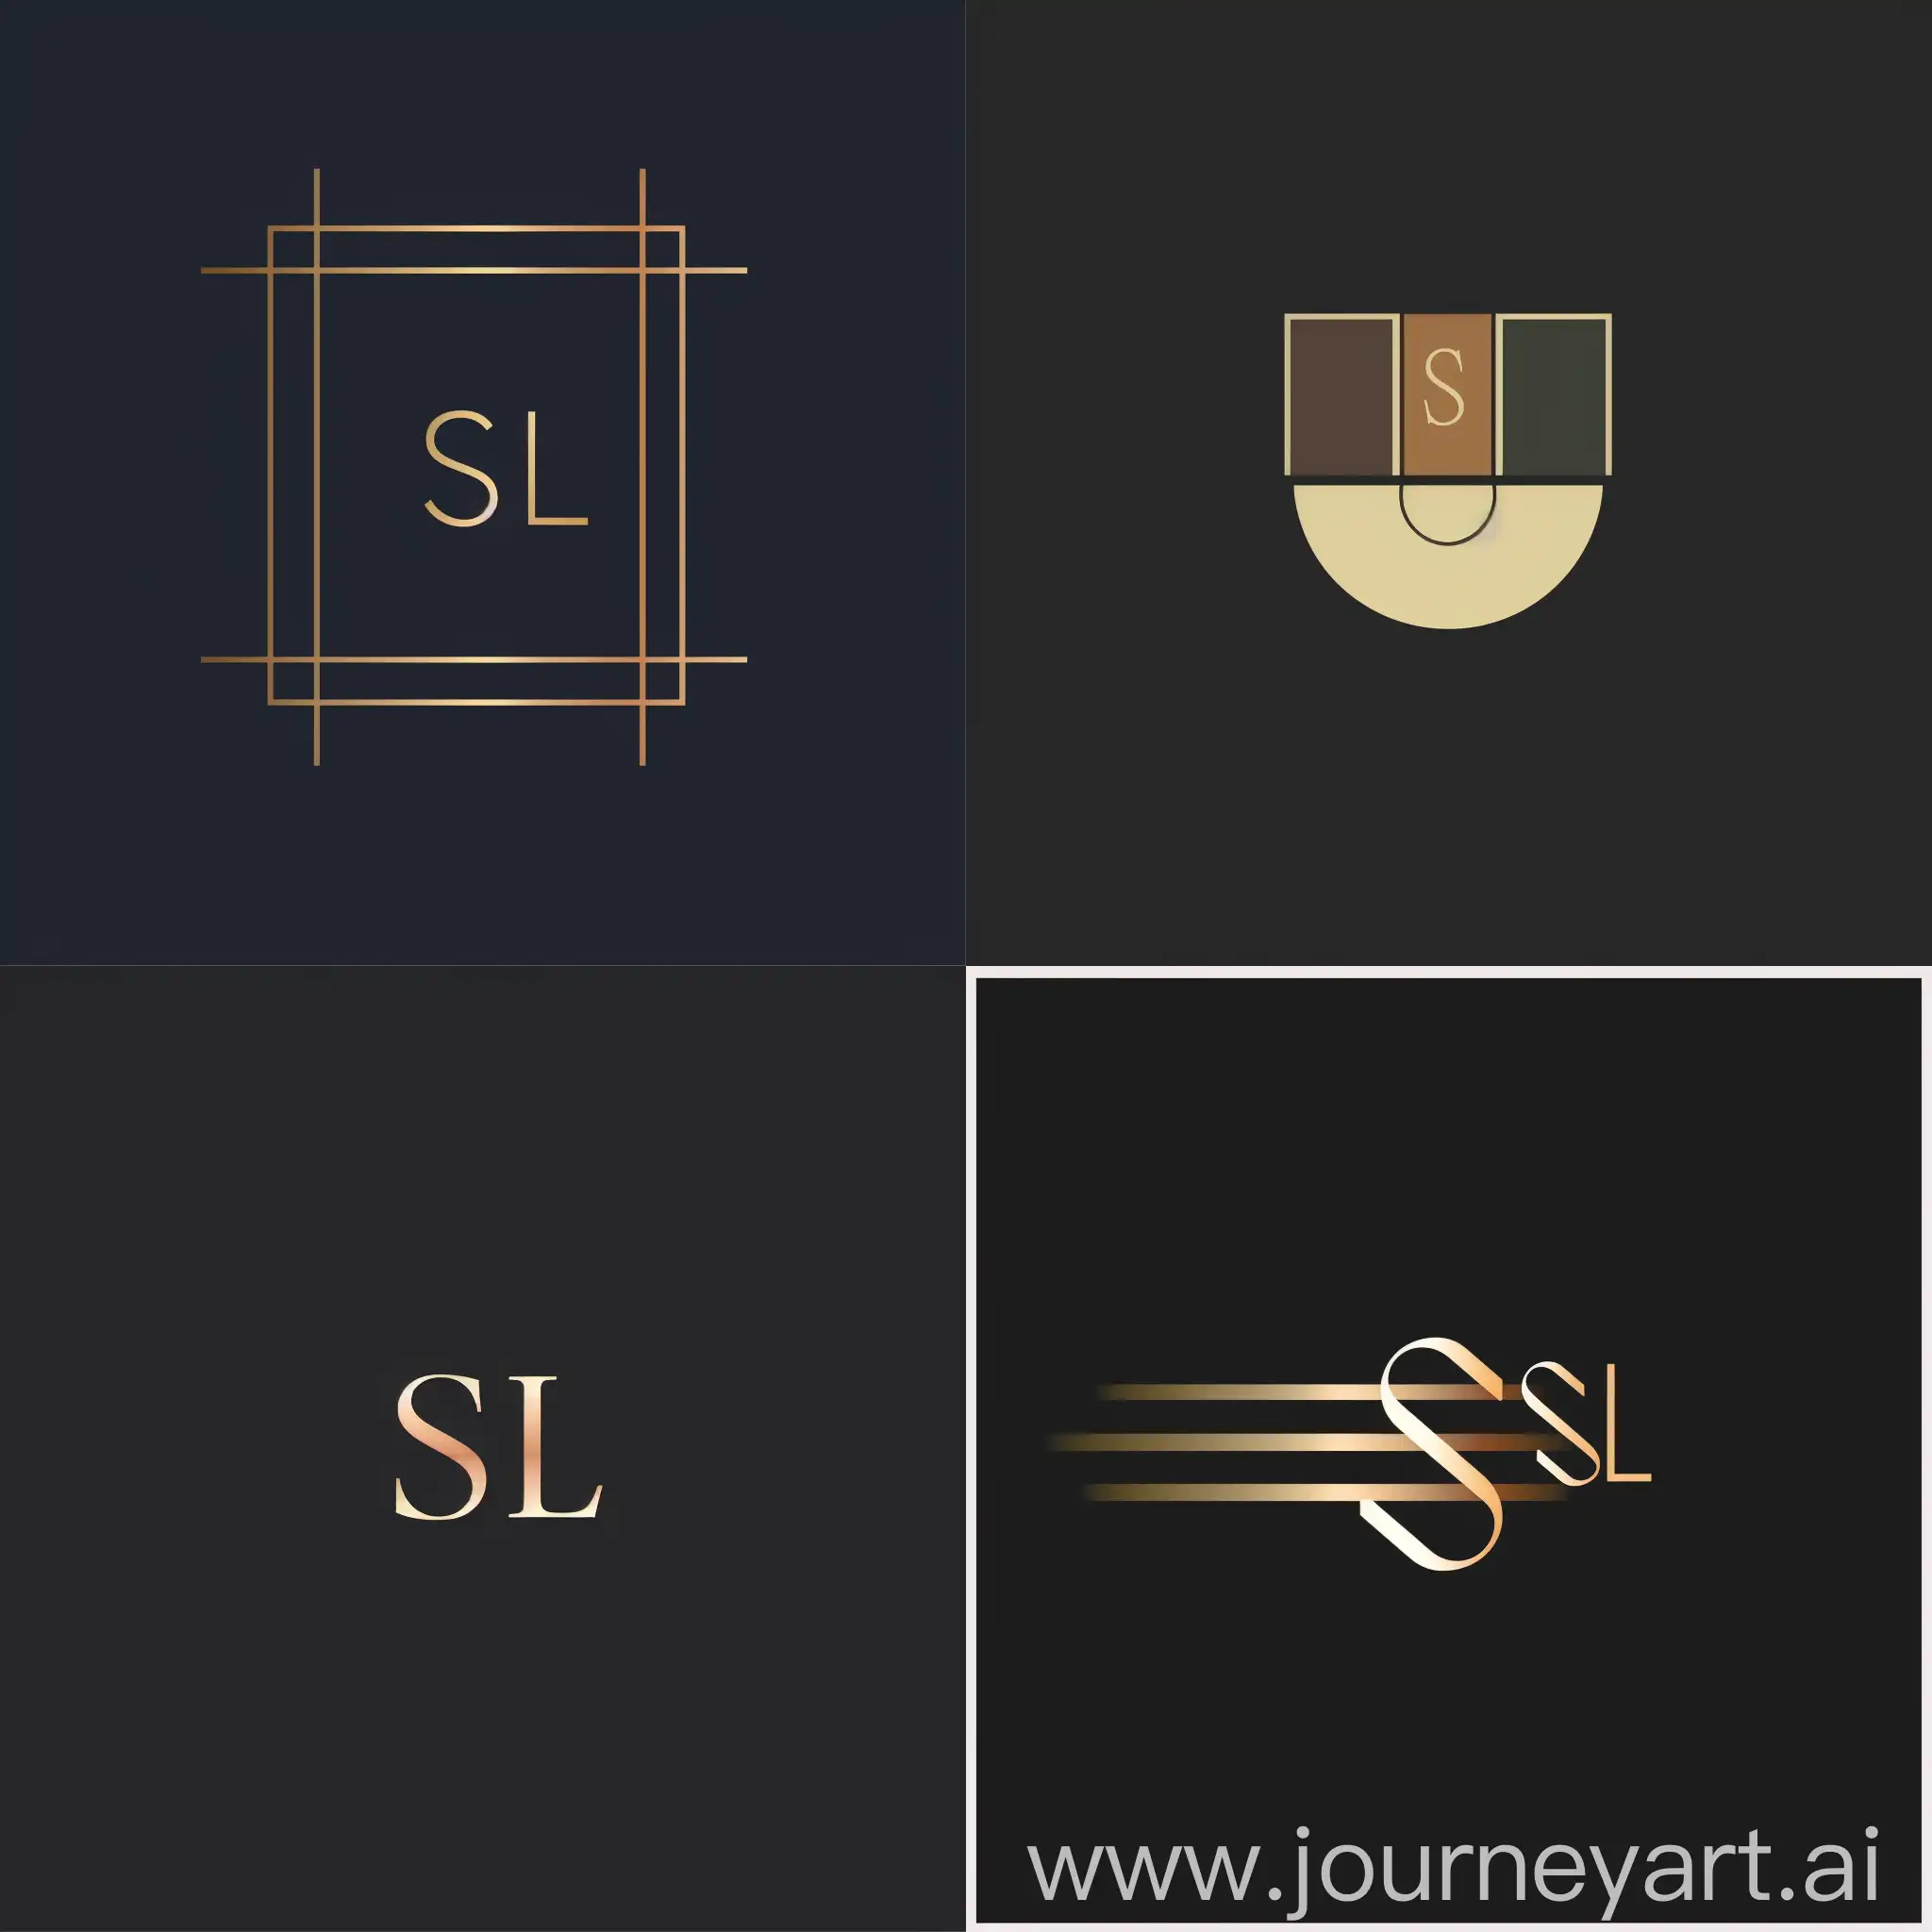 логотип с буквами "SL", минималистичный и элегантный с утонченными линиями и цветовой гаммой, отражающий изысканность и стиль